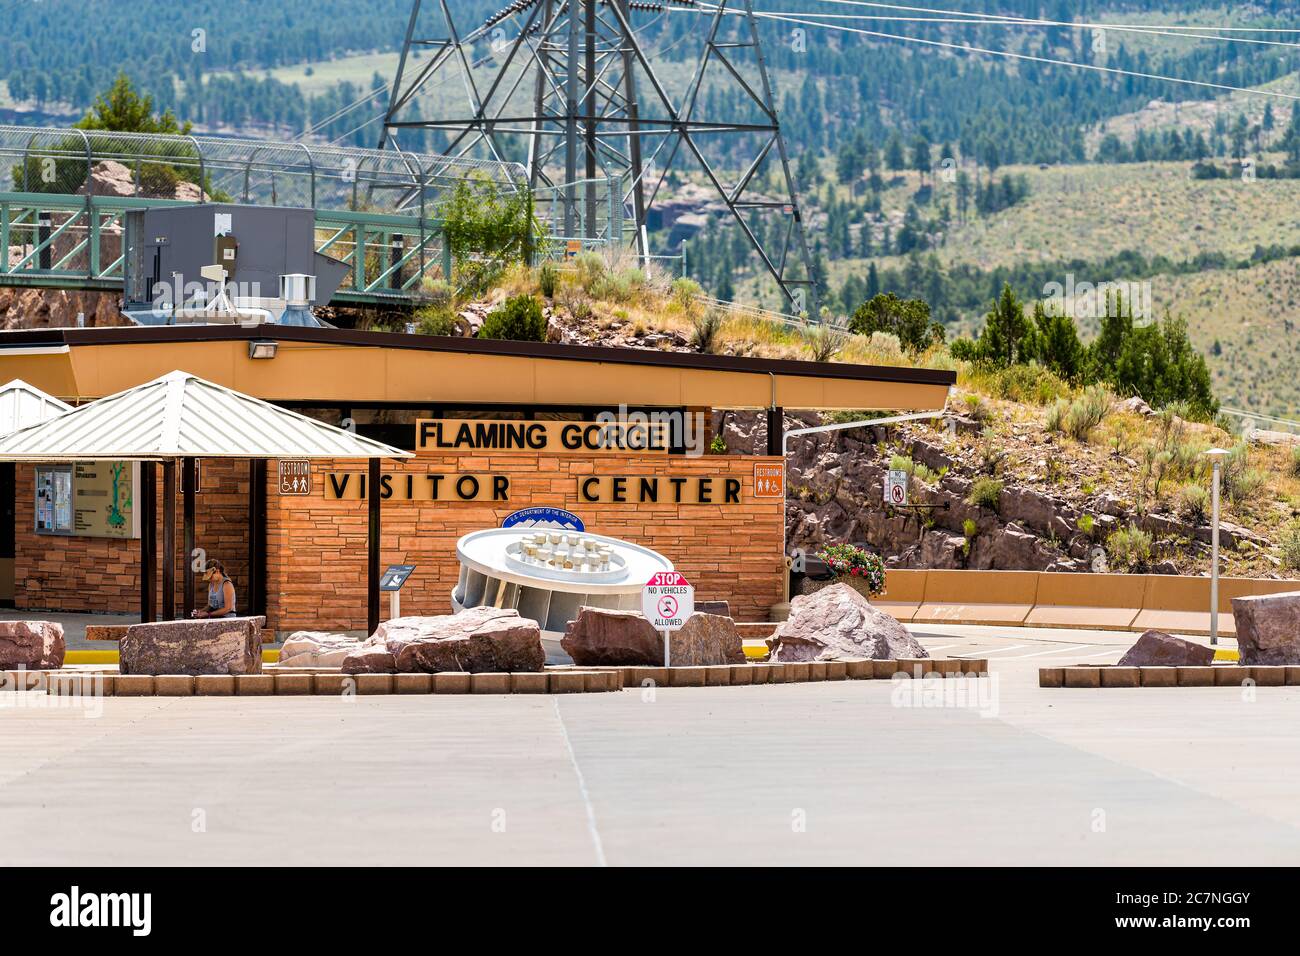 Dutch John, USA - 23. Juli 2019: Flaming Gorge Utah National Park Besucherzentrum Damm mit Schild Eingang und Toiletten Stockfoto